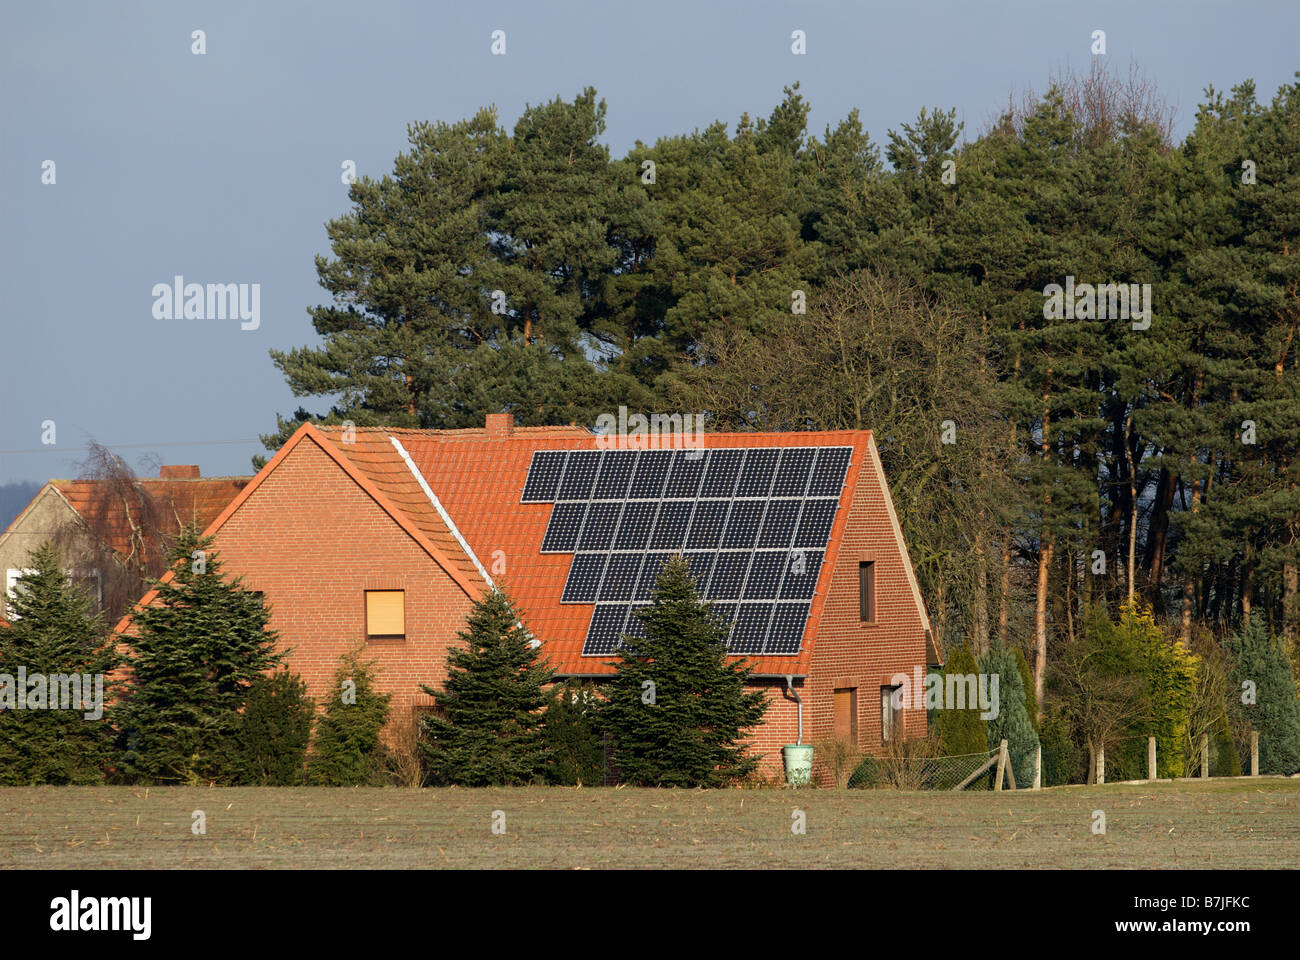 Solar-Panels ausgestattet, um das Dach eines Hauses zur Stromerzeugung für Eigentum und das nationale Stromnetz, Oppenwehe, Deutschland. Stockfoto